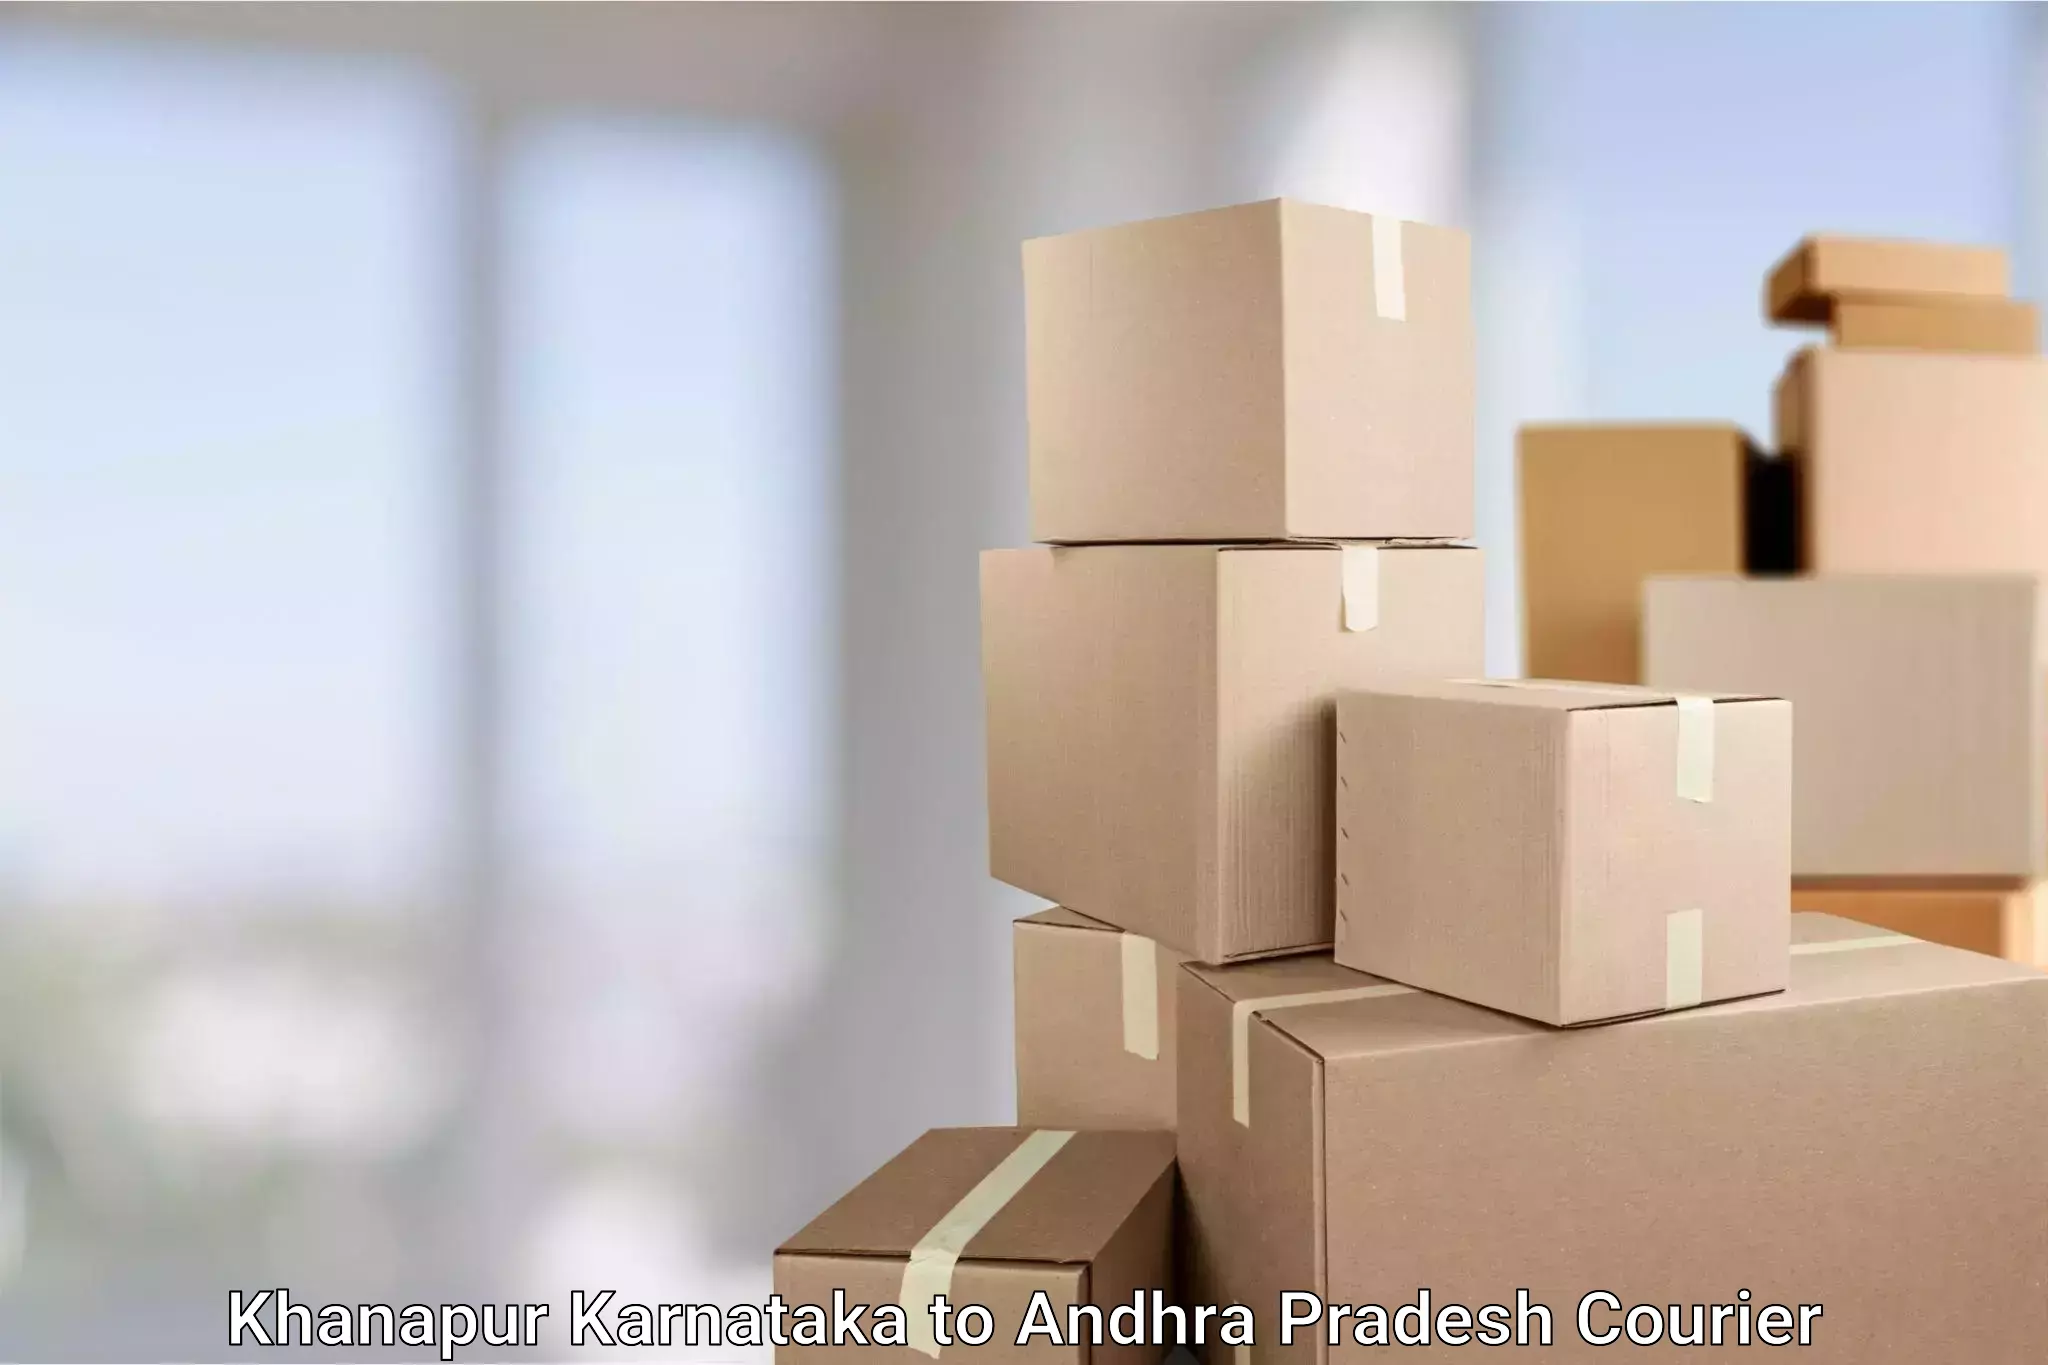 Efficient parcel service Khanapur Karnataka to Amadalavalasa